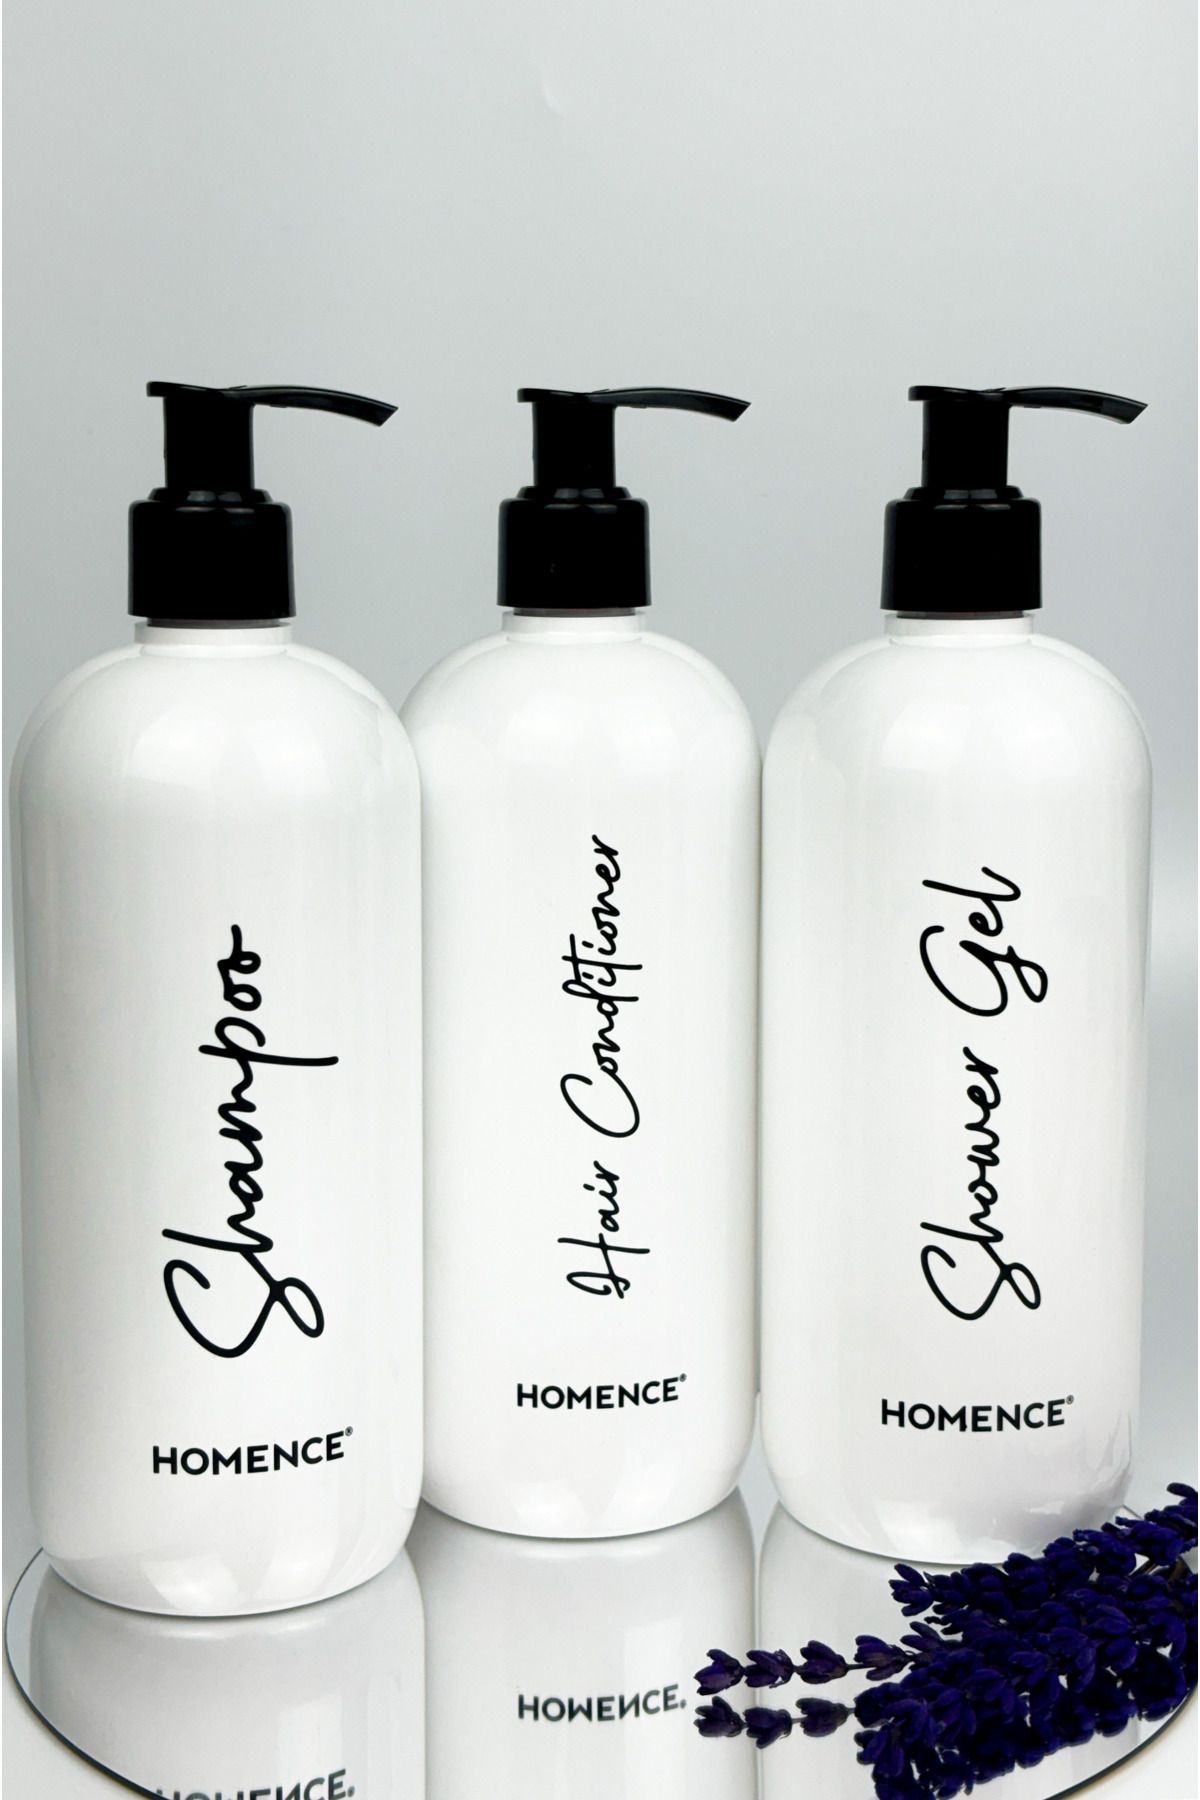 homence Şampuan Duş Jeli Saç Kremi Baskılı Plastik Şişe Banyo Seti 3'lü Beyaz 500 ml